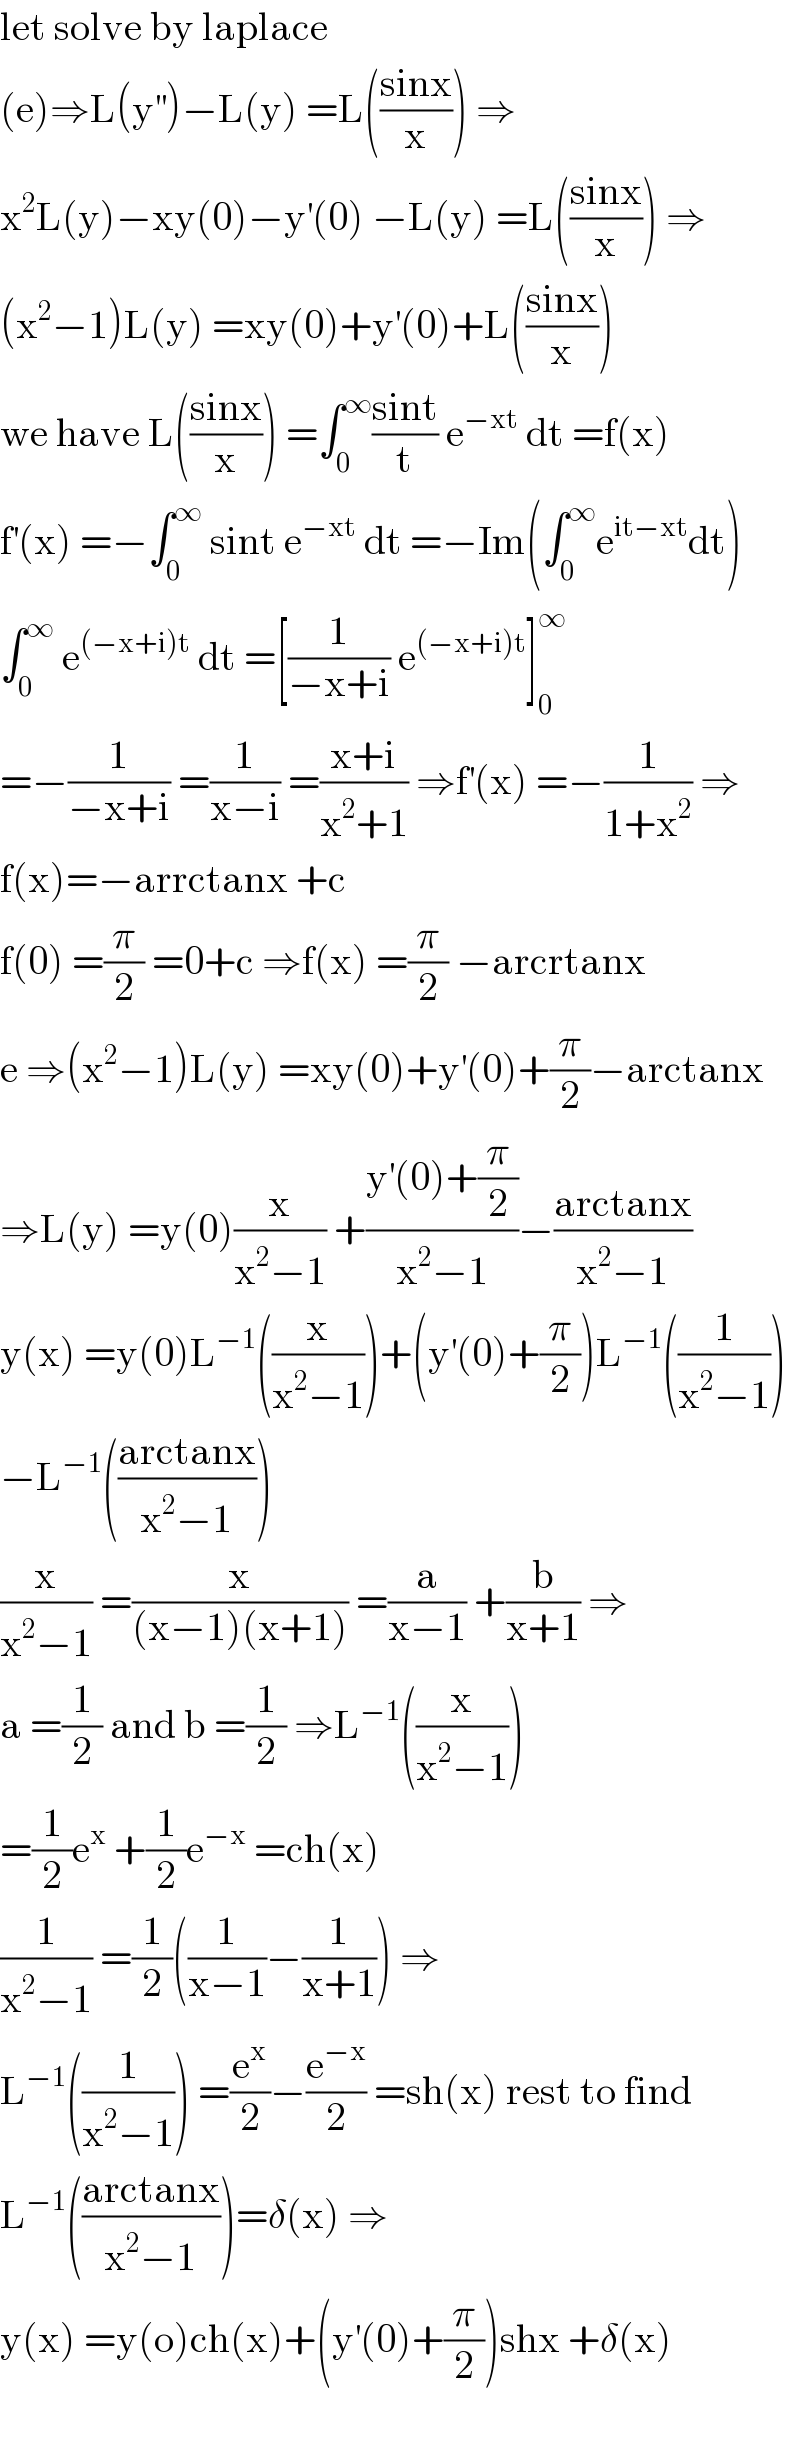 let solve by laplace   (e)⇒L(y^(′′) )−L(y) =L(((sinx)/x)) ⇒  x^2 L(y)−xy(0)−y^′ (0) −L(y) =L(((sinx)/x)) ⇒  (x^2 −1)L(y) =xy(0)+y^′ (0)+L(((sinx)/x))  we have L(((sinx)/x)) =∫_0 ^∞ ((sint)/t) e^(−xt)  dt =f(x)  f^′ (x) =−∫_0 ^∞  sint e^(−xt)  dt =−Im(∫_0 ^∞ e^(it−xt) dt)  ∫_0 ^∞  e^((−x+i)t)  dt =[(1/(−x+i)) e^((−x+i)t) ]_0 ^∞   =−(1/(−x+i)) =(1/(x−i)) =((x+i)/(x^2 +1)) ⇒f^′ (x) =−(1/(1+x^2 )) ⇒  f(x)=−arrctanx +c  f(0) =(π/2) =0+c ⇒f(x) =(π/2) −arcrtanx  e ⇒(x^2 −1)L(y) =xy(0)+y^′ (0)+(π/2)−arctanx  ⇒L(y) =y(0)(x/(x^2 −1)) +((y^′ (0)+(π/2))/(x^2 −1))−((arctanx)/(x^2 −1))  y(x) =y(0)L^(−1) ((x/(x^2 −1)))+(y^′ (0)+(π/2))L^(−1) ((1/(x^2 −1)))  −L^(−1) (((arctanx)/(x^2 −1)))  (x/(x^2 −1)) =(x/((x−1)(x+1))) =(a/(x−1)) +(b/(x+1)) ⇒  a =(1/2) and b =(1/2) ⇒L^(−1) ((x/(x^2 −1)))  =(1/2)e^x  +(1/2)e^(−x)  =ch(x)  (1/(x^2 −1)) =(1/2)((1/(x−1))−(1/(x+1))) ⇒  L^(−1) ((1/(x^2 −1))) =(e^x /2)−(e^(−x) /2) =sh(x) rest to find  L^(−1) (((arctanx)/(x^2 −1)))=δ(x) ⇒  y(x) =y(o)ch(x)+(y^′ (0)+(π/2))shx +δ(x)    